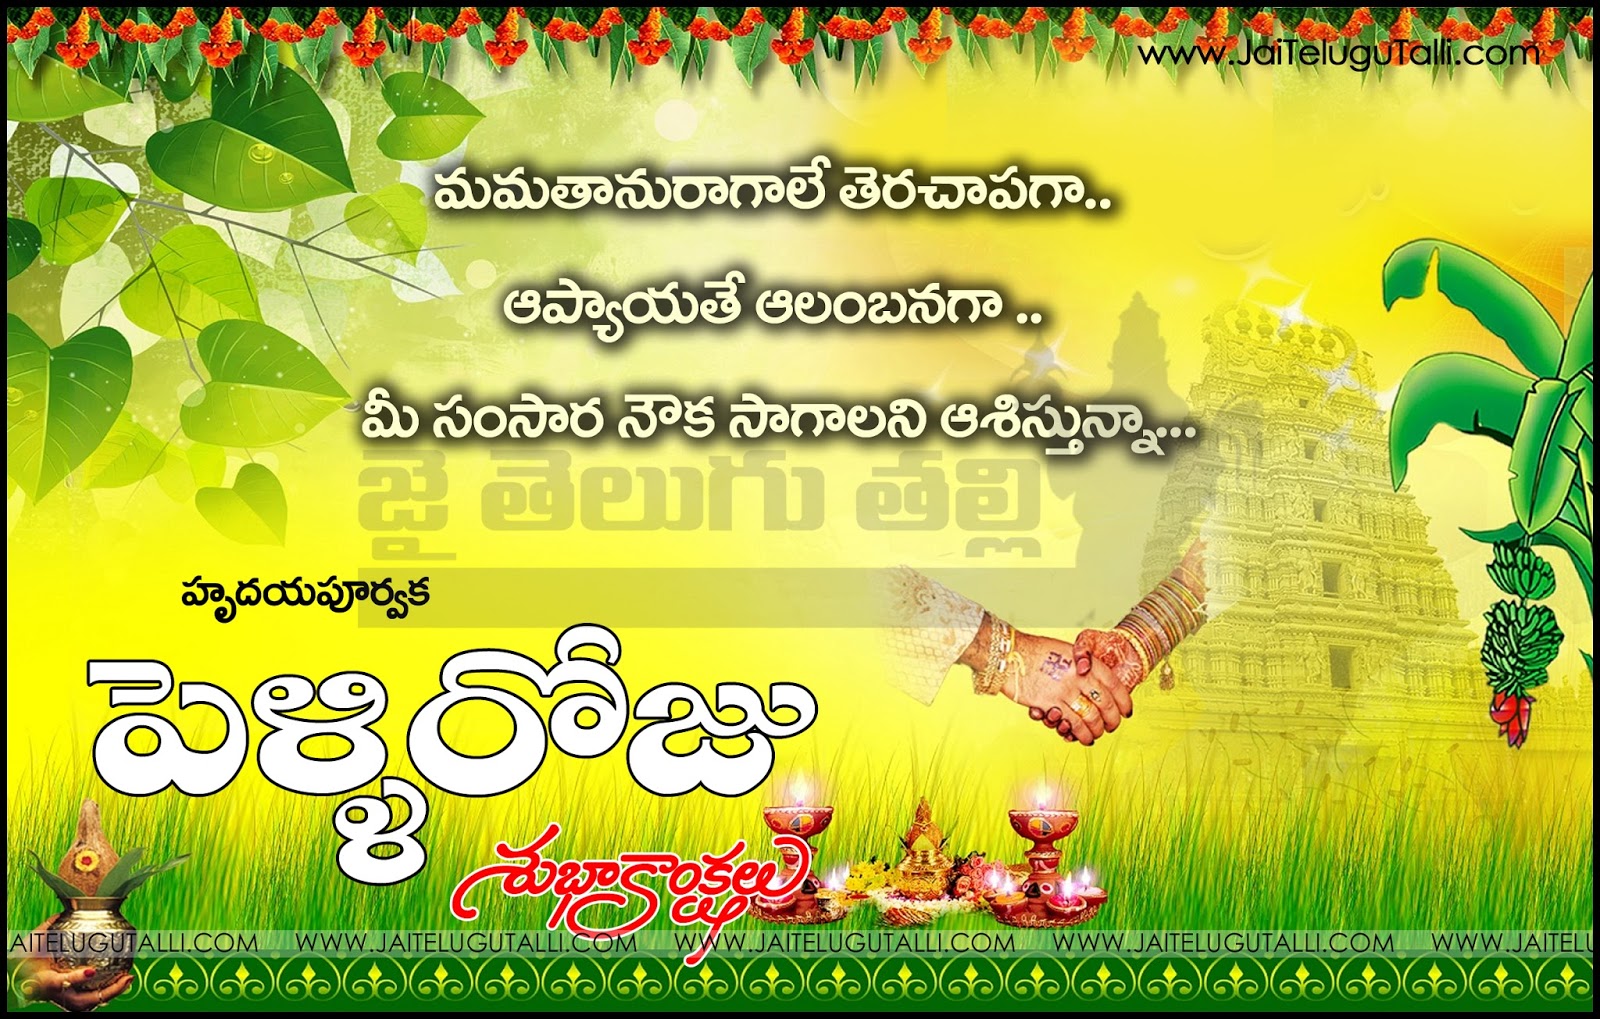 Telugu Happy Marriage Day Wishes Telugu quotes images